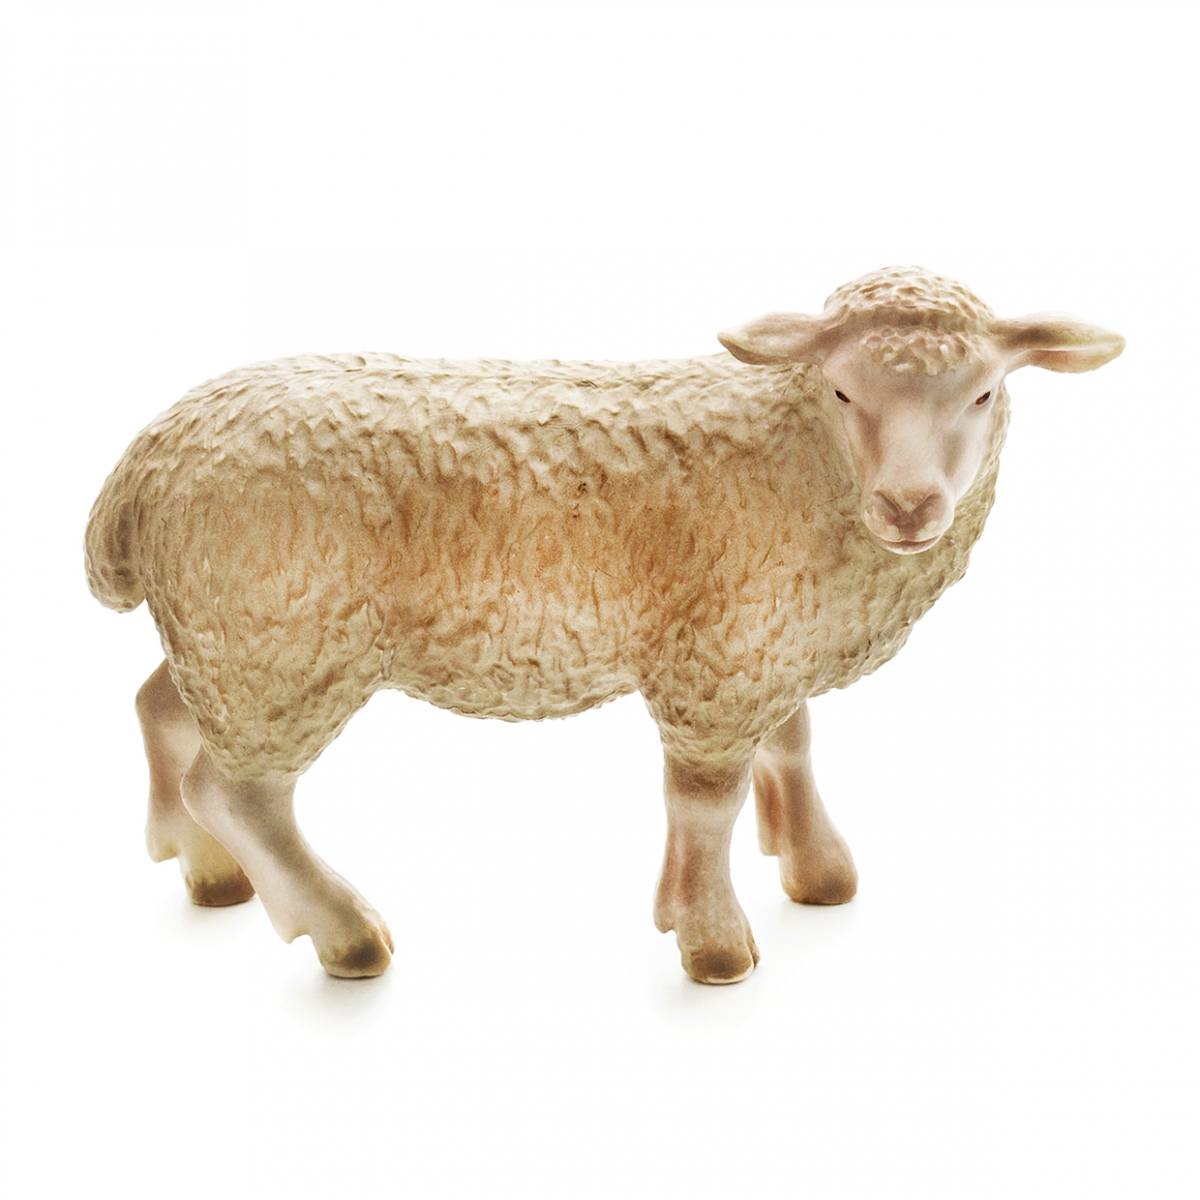 Imagen en la que se ve una oveja en perspectiva lateral